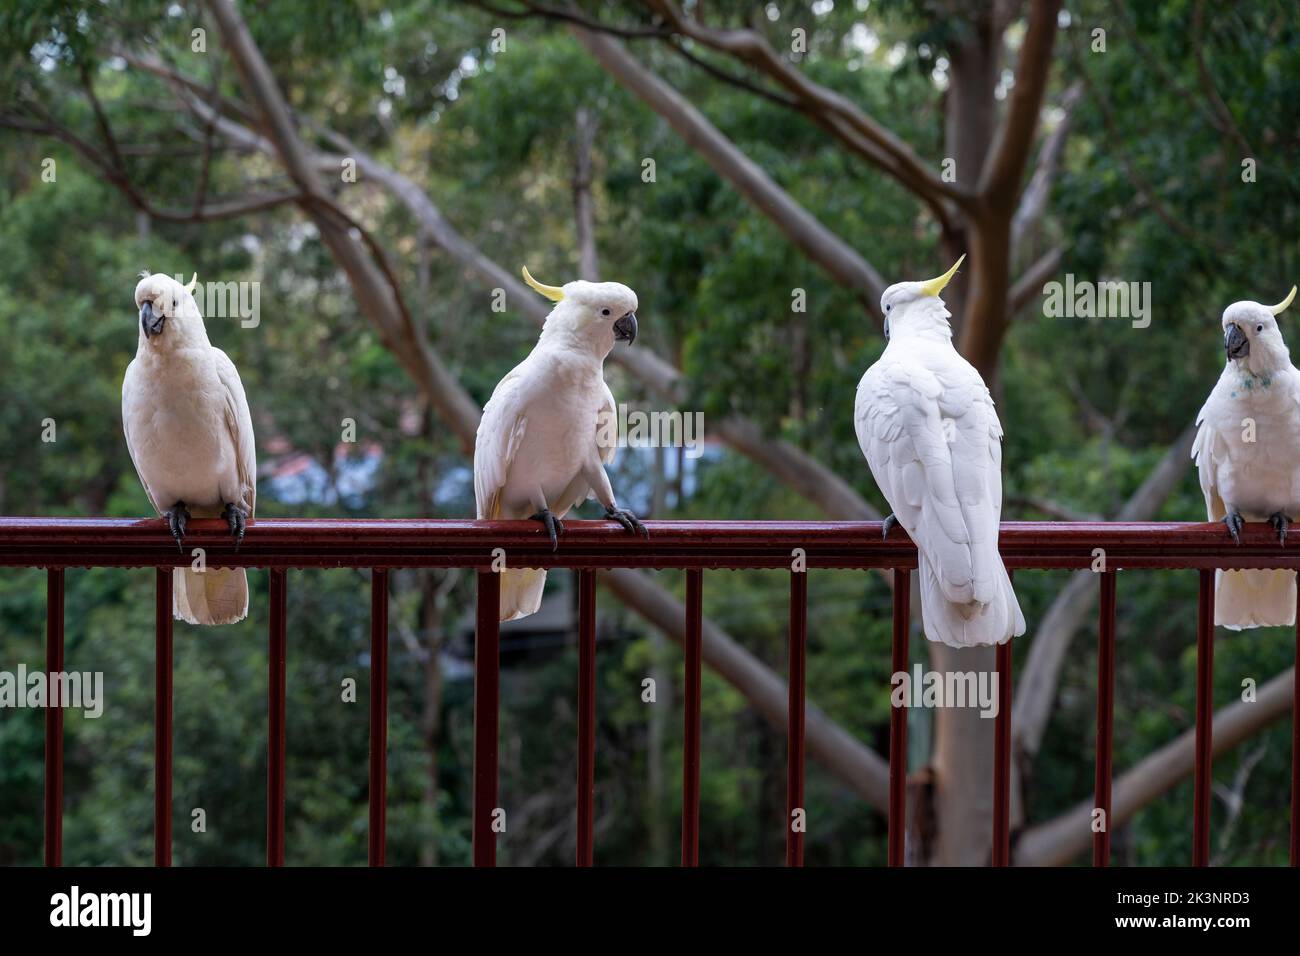 Vögel sitzen auf Geländern auf dem Balkon des Gebäudes. Konzept von Vögeln und Menschen, die sich zusammenleben. Vögel, die in menschlichen städtischen Gebieten in Australien überleben. Stockfoto